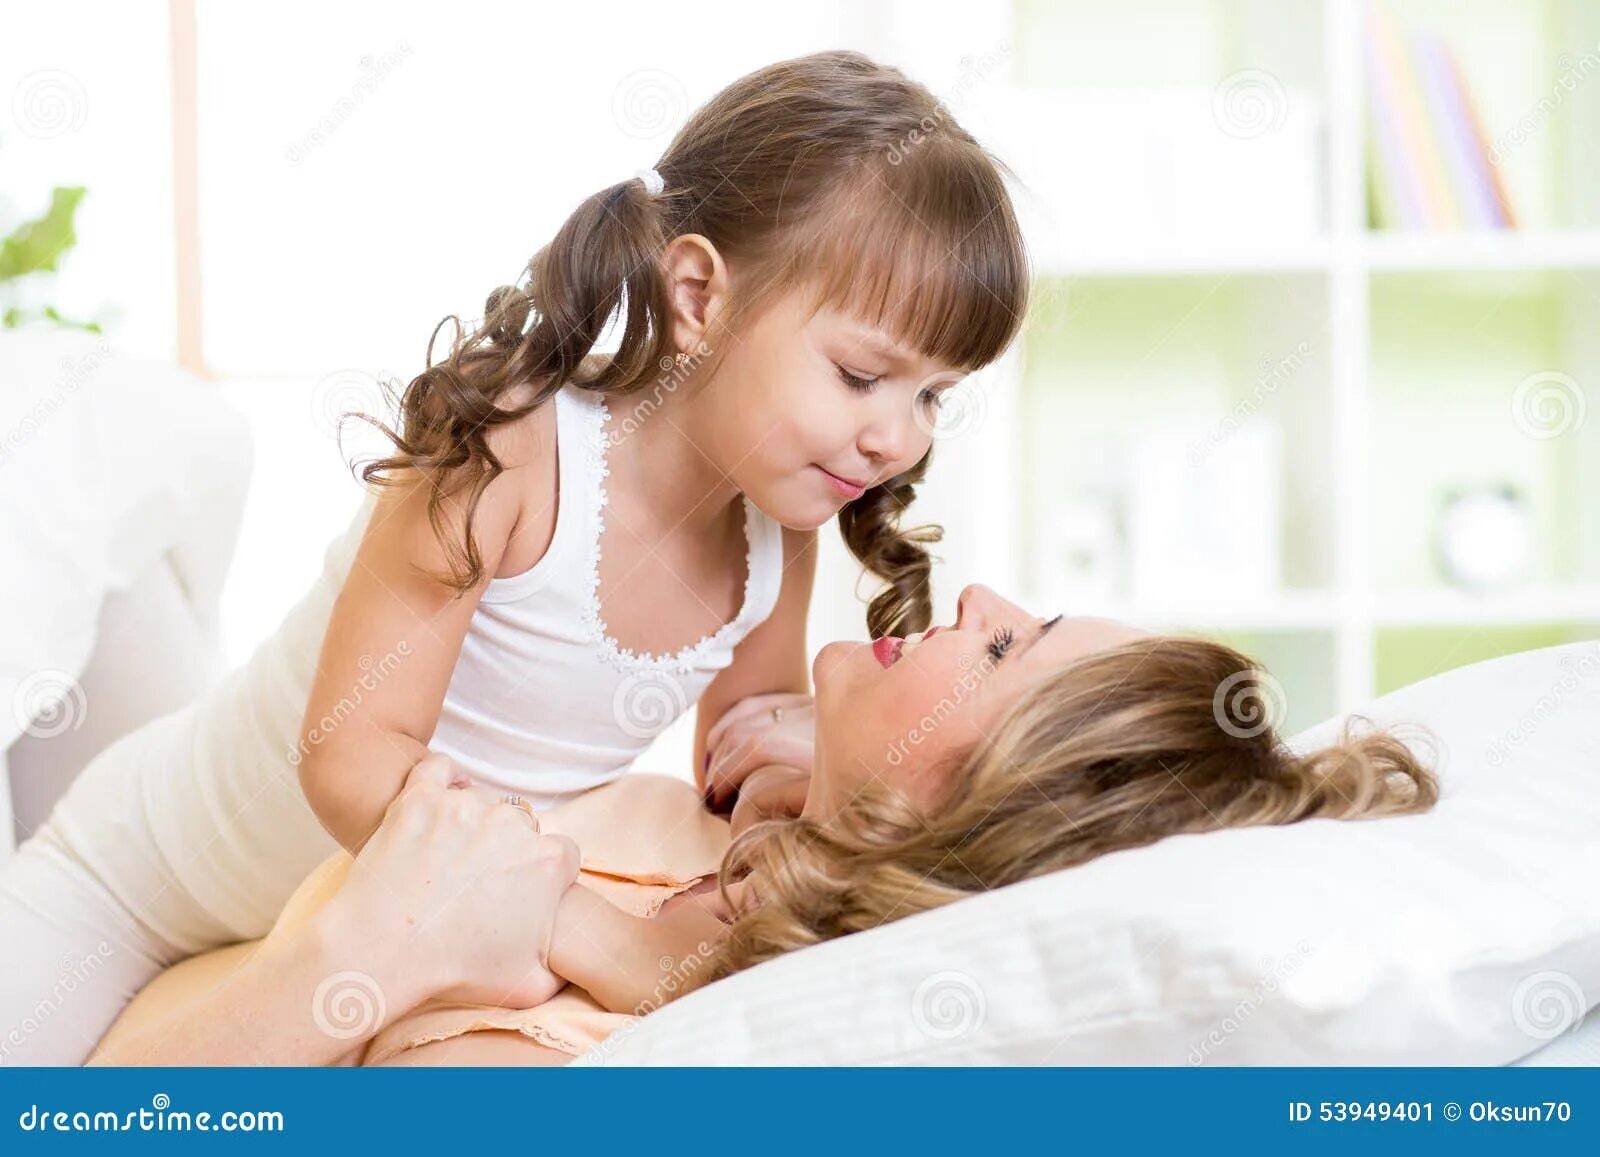 Возбужденные мать и дочь. Мама облизывает ребенка. Мама целует дочку в кровати. Мама с дочкой Облизываются. Заставила папу лизать